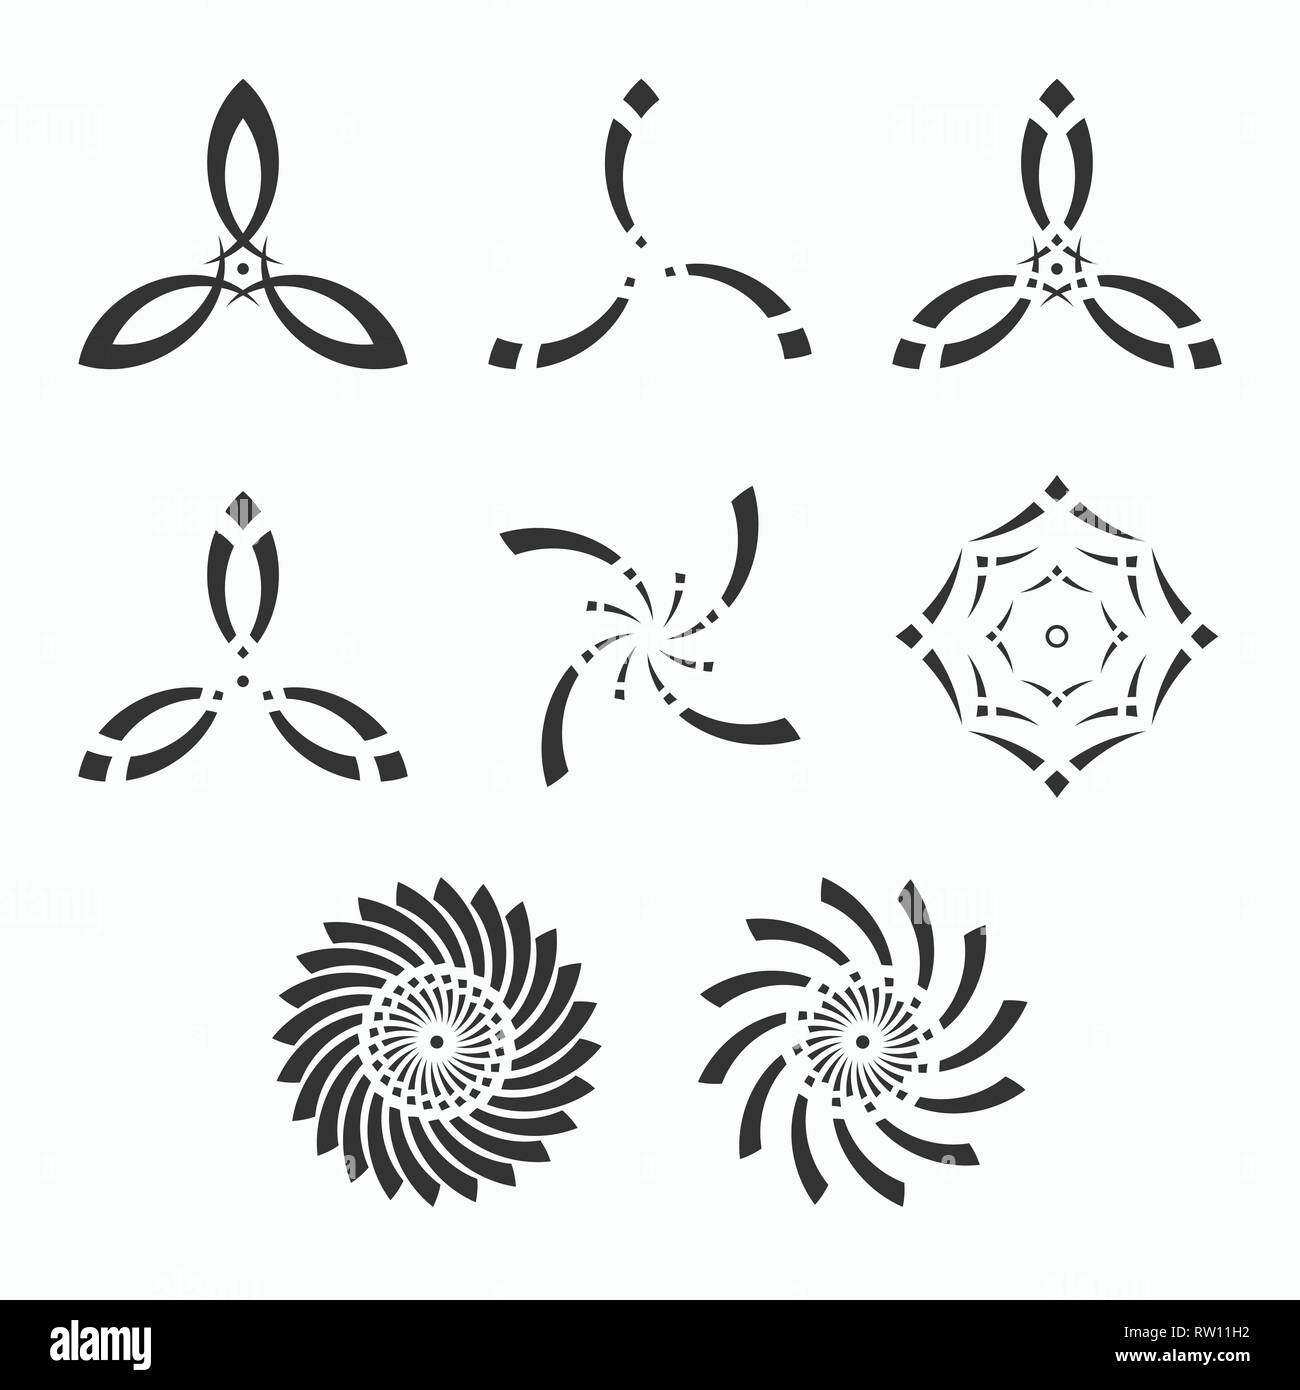 Conjunto de formas geométricas simétricas abstractas, símbolos para su diseño. Monocromo vectorial aislado de las formas. Ilustración del Vector